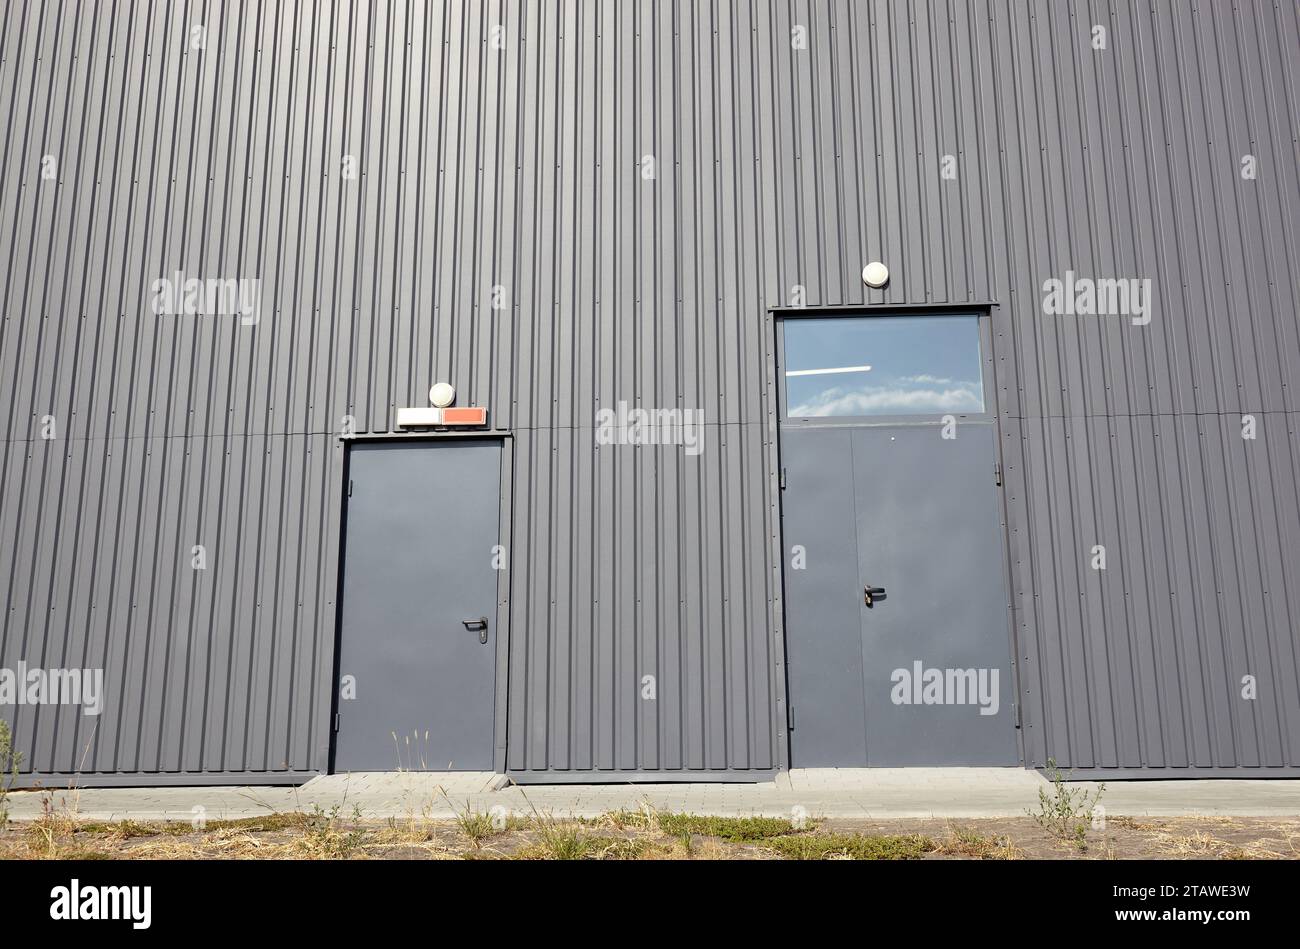 Entrepôt en acier ondulé ou bâtiment industriel d'usine. Architecture. Texture métallique Banque D'Images